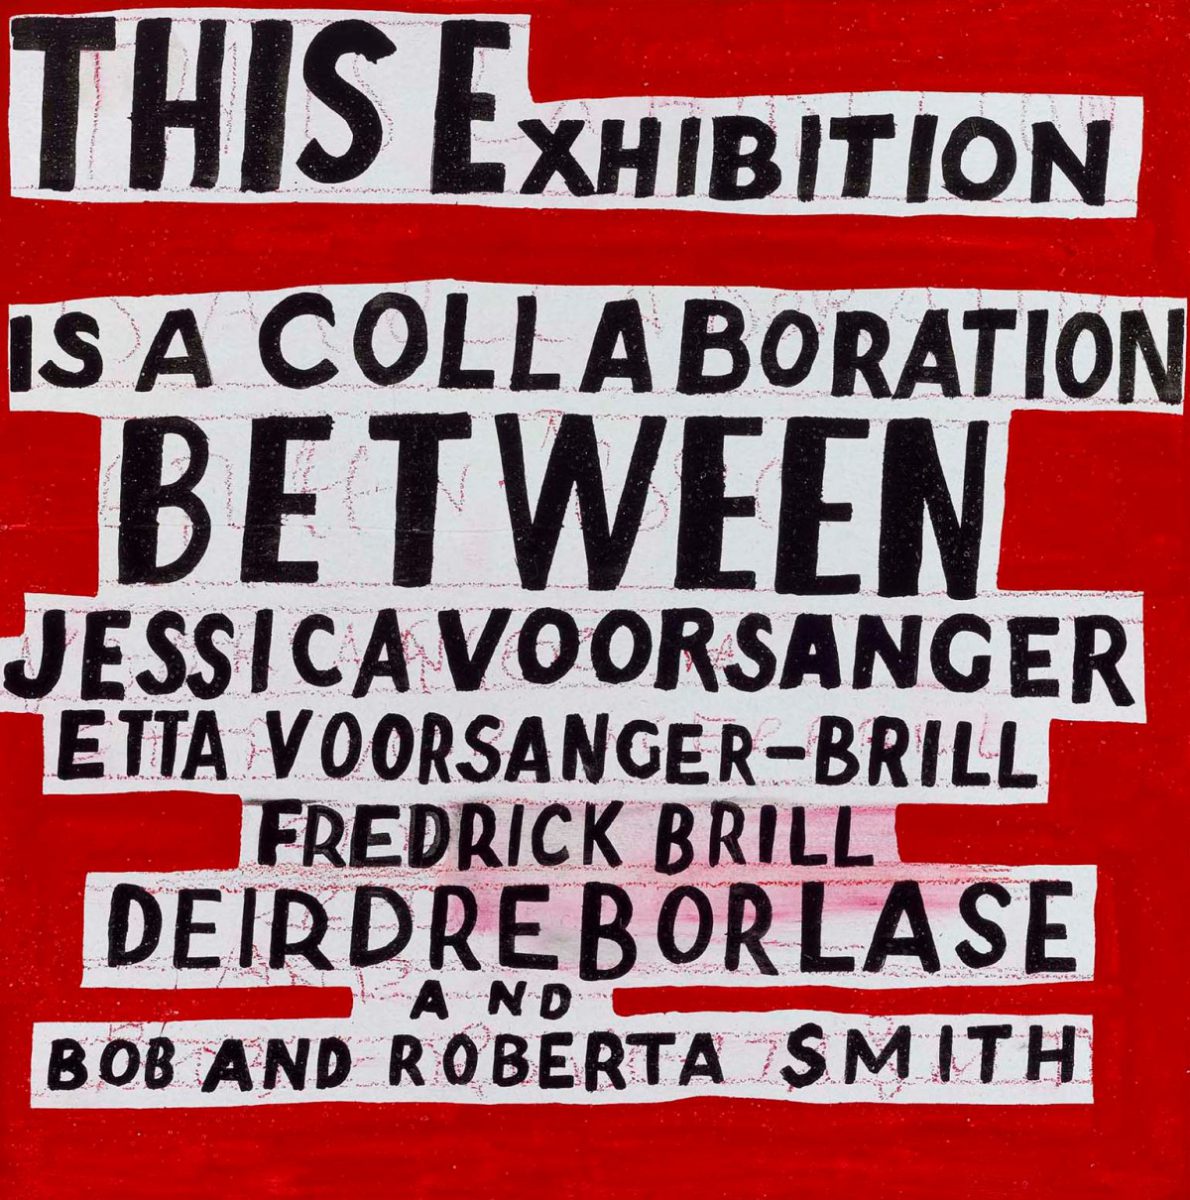 Bob and Roberta Smith Royal Academy of Art